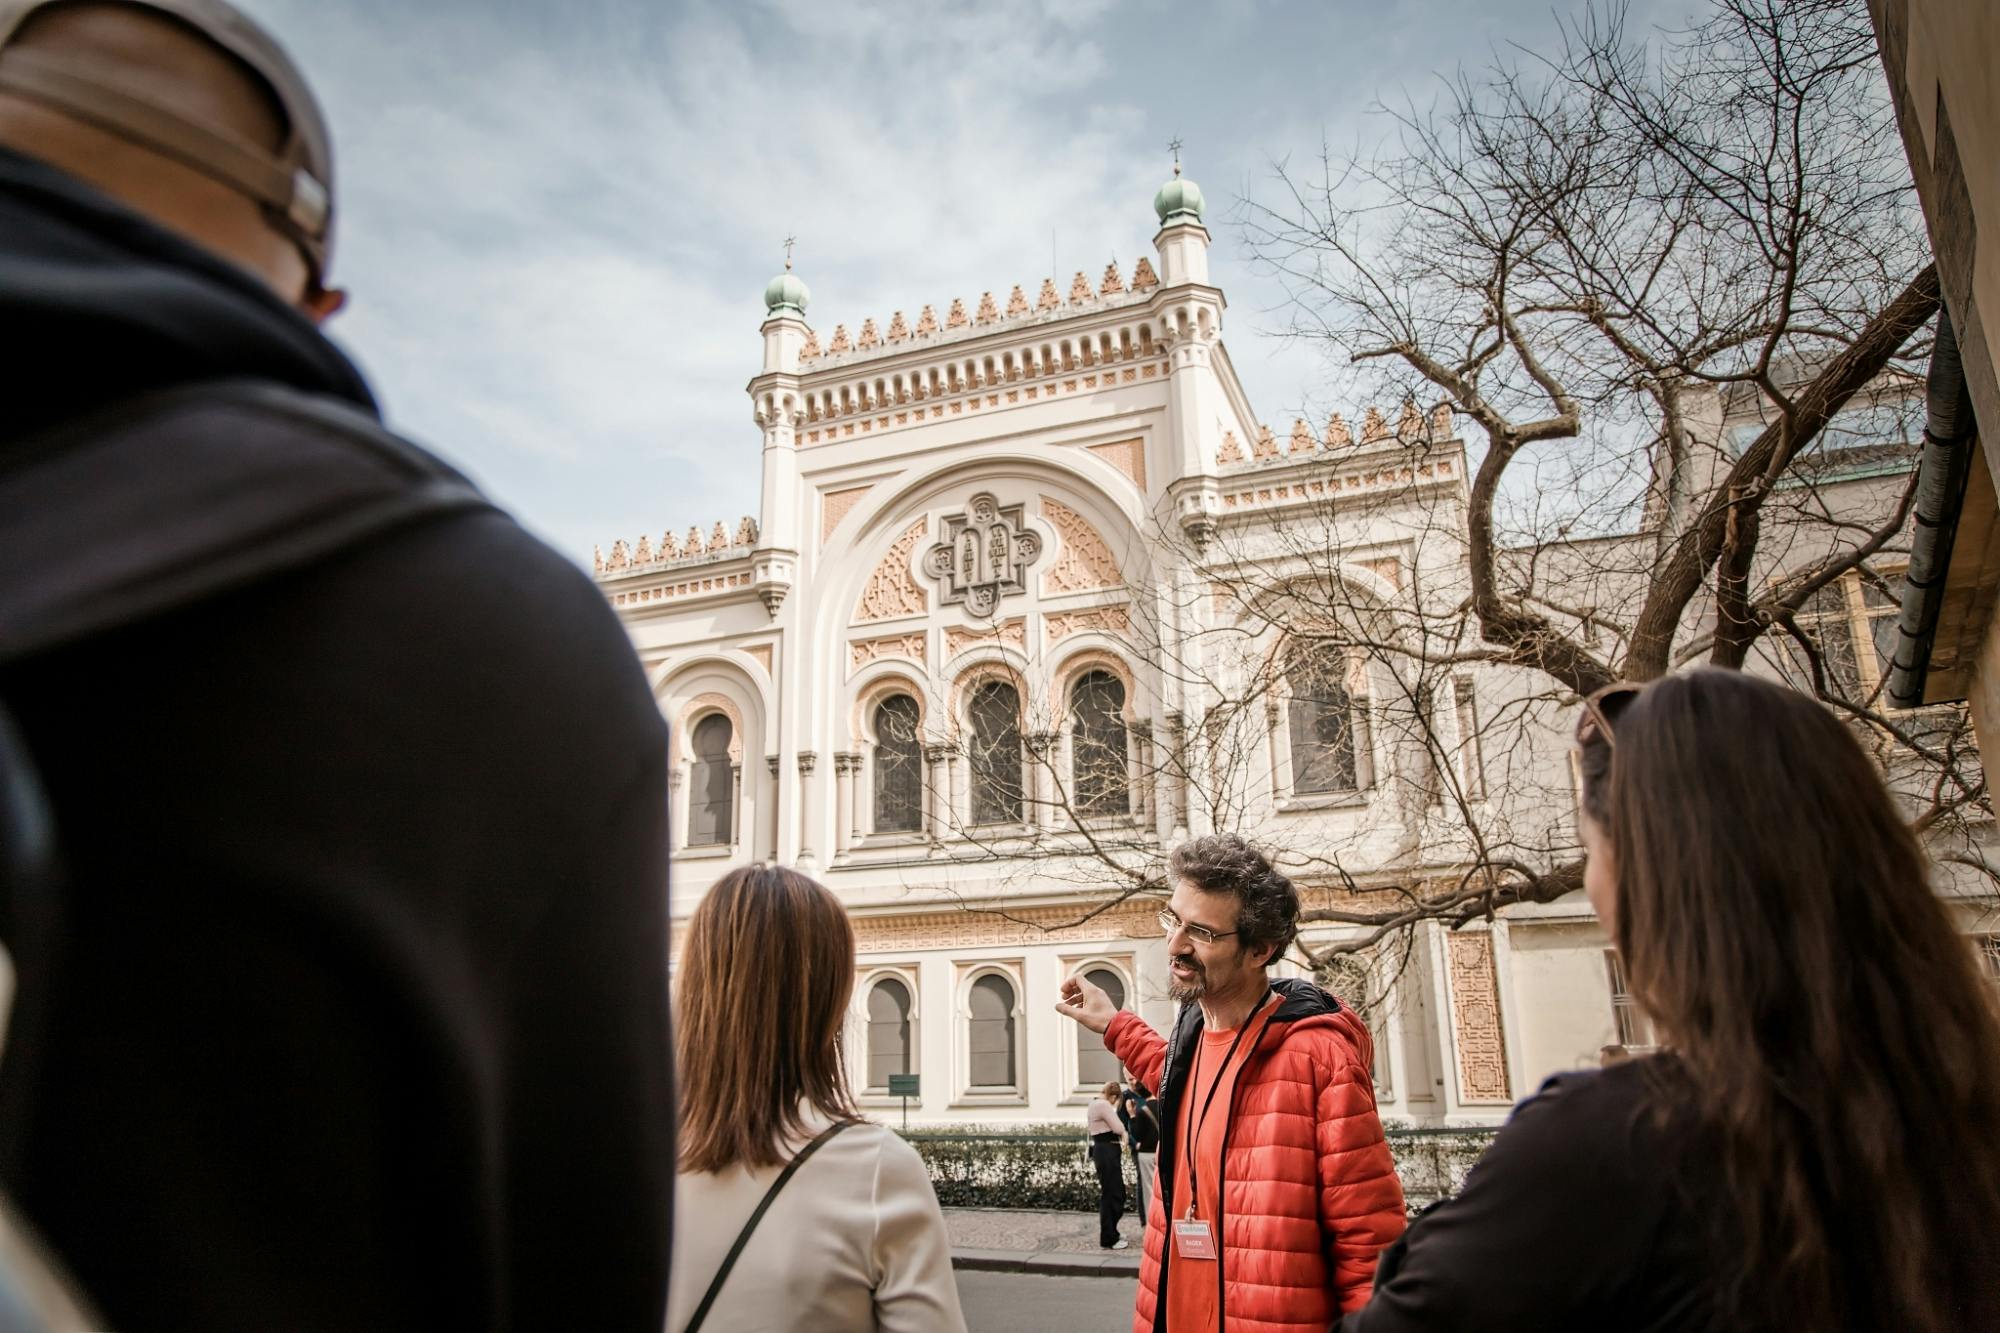 Begeleide wandeling door de oude binnenstad en de Joodse wijk van Praag